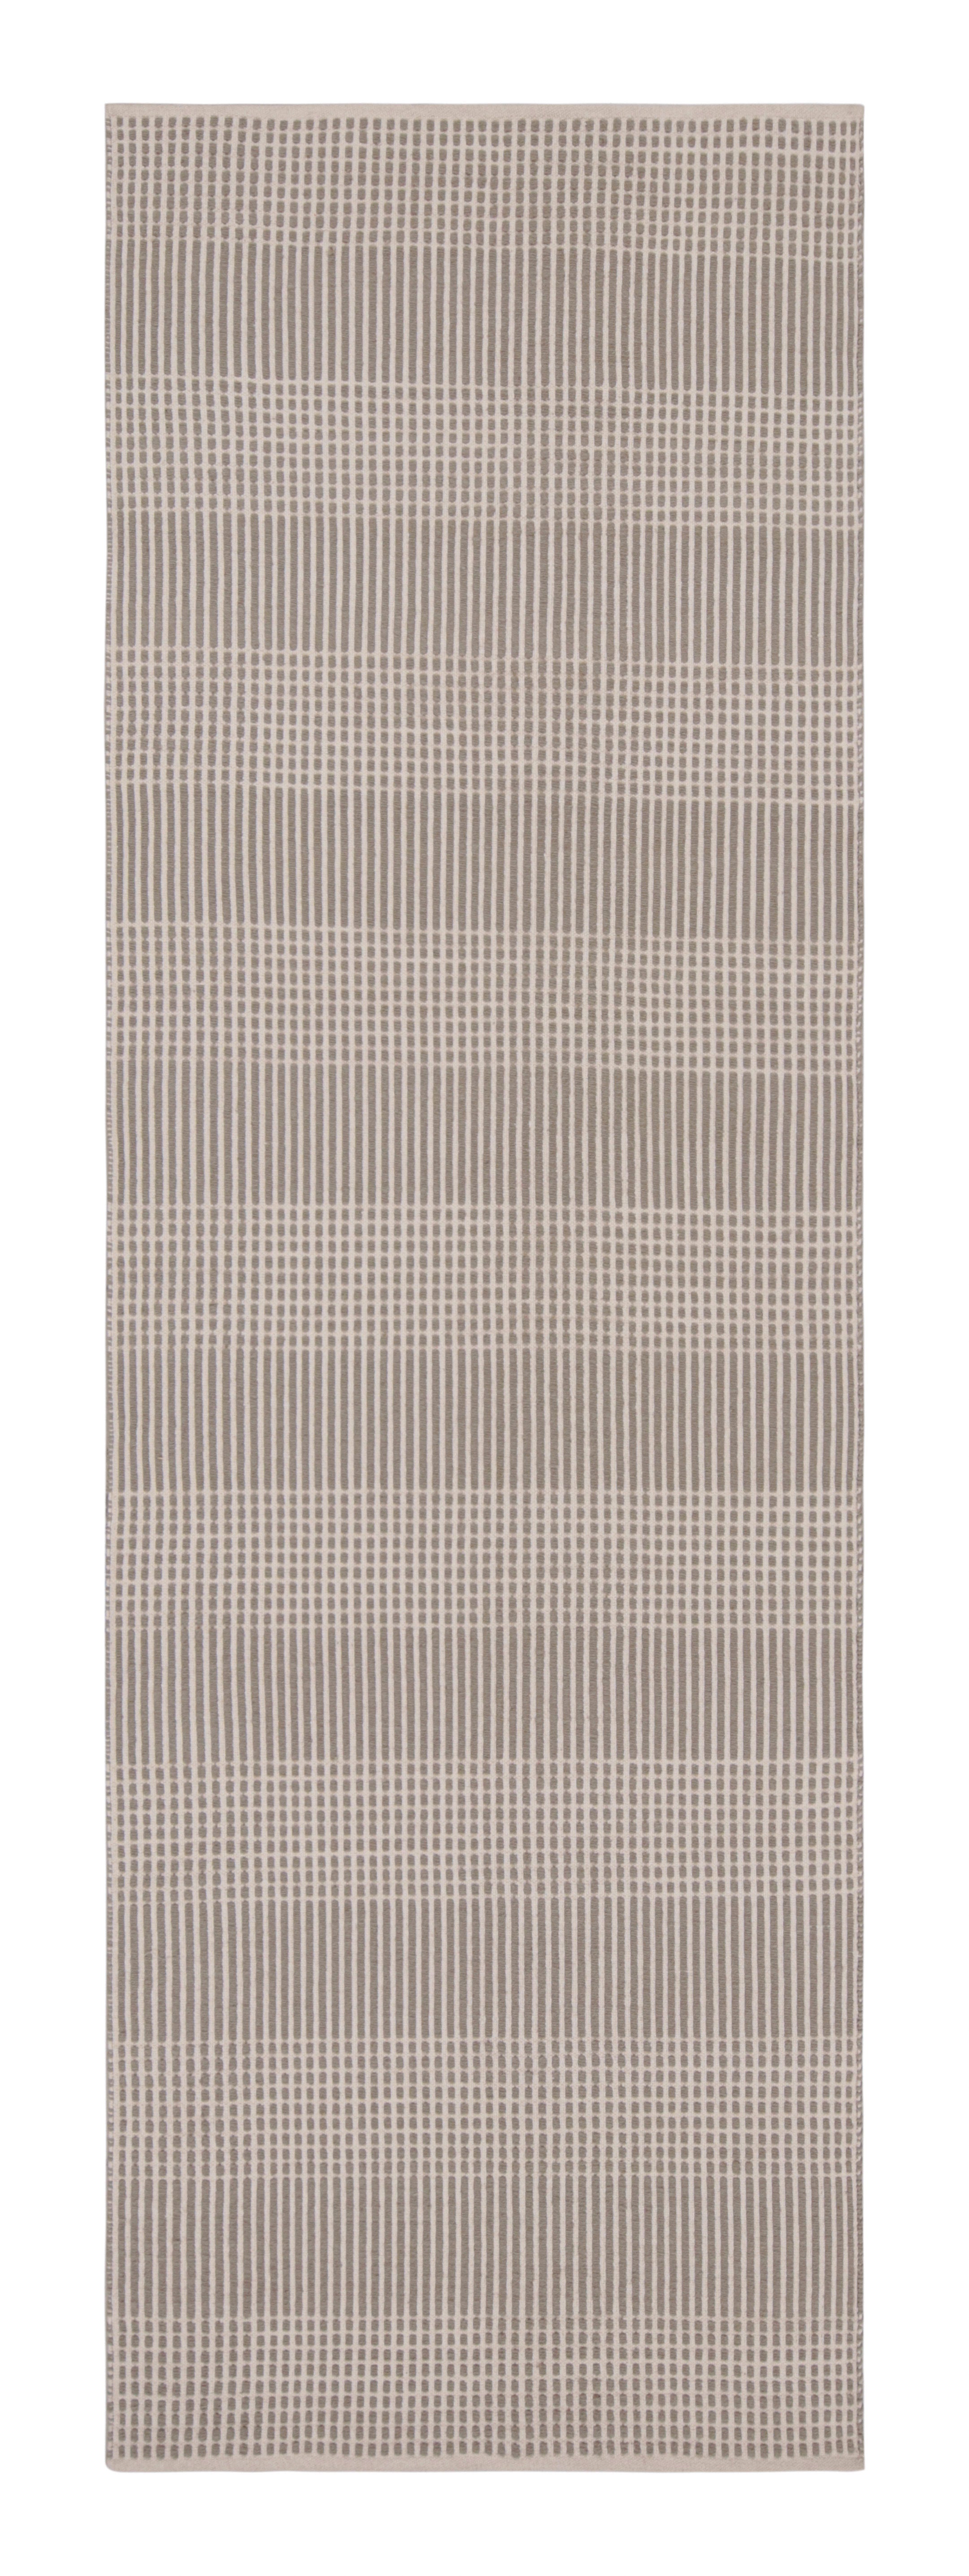 Modern Flat-Weave Beige Brown Geometric Striped Pattern